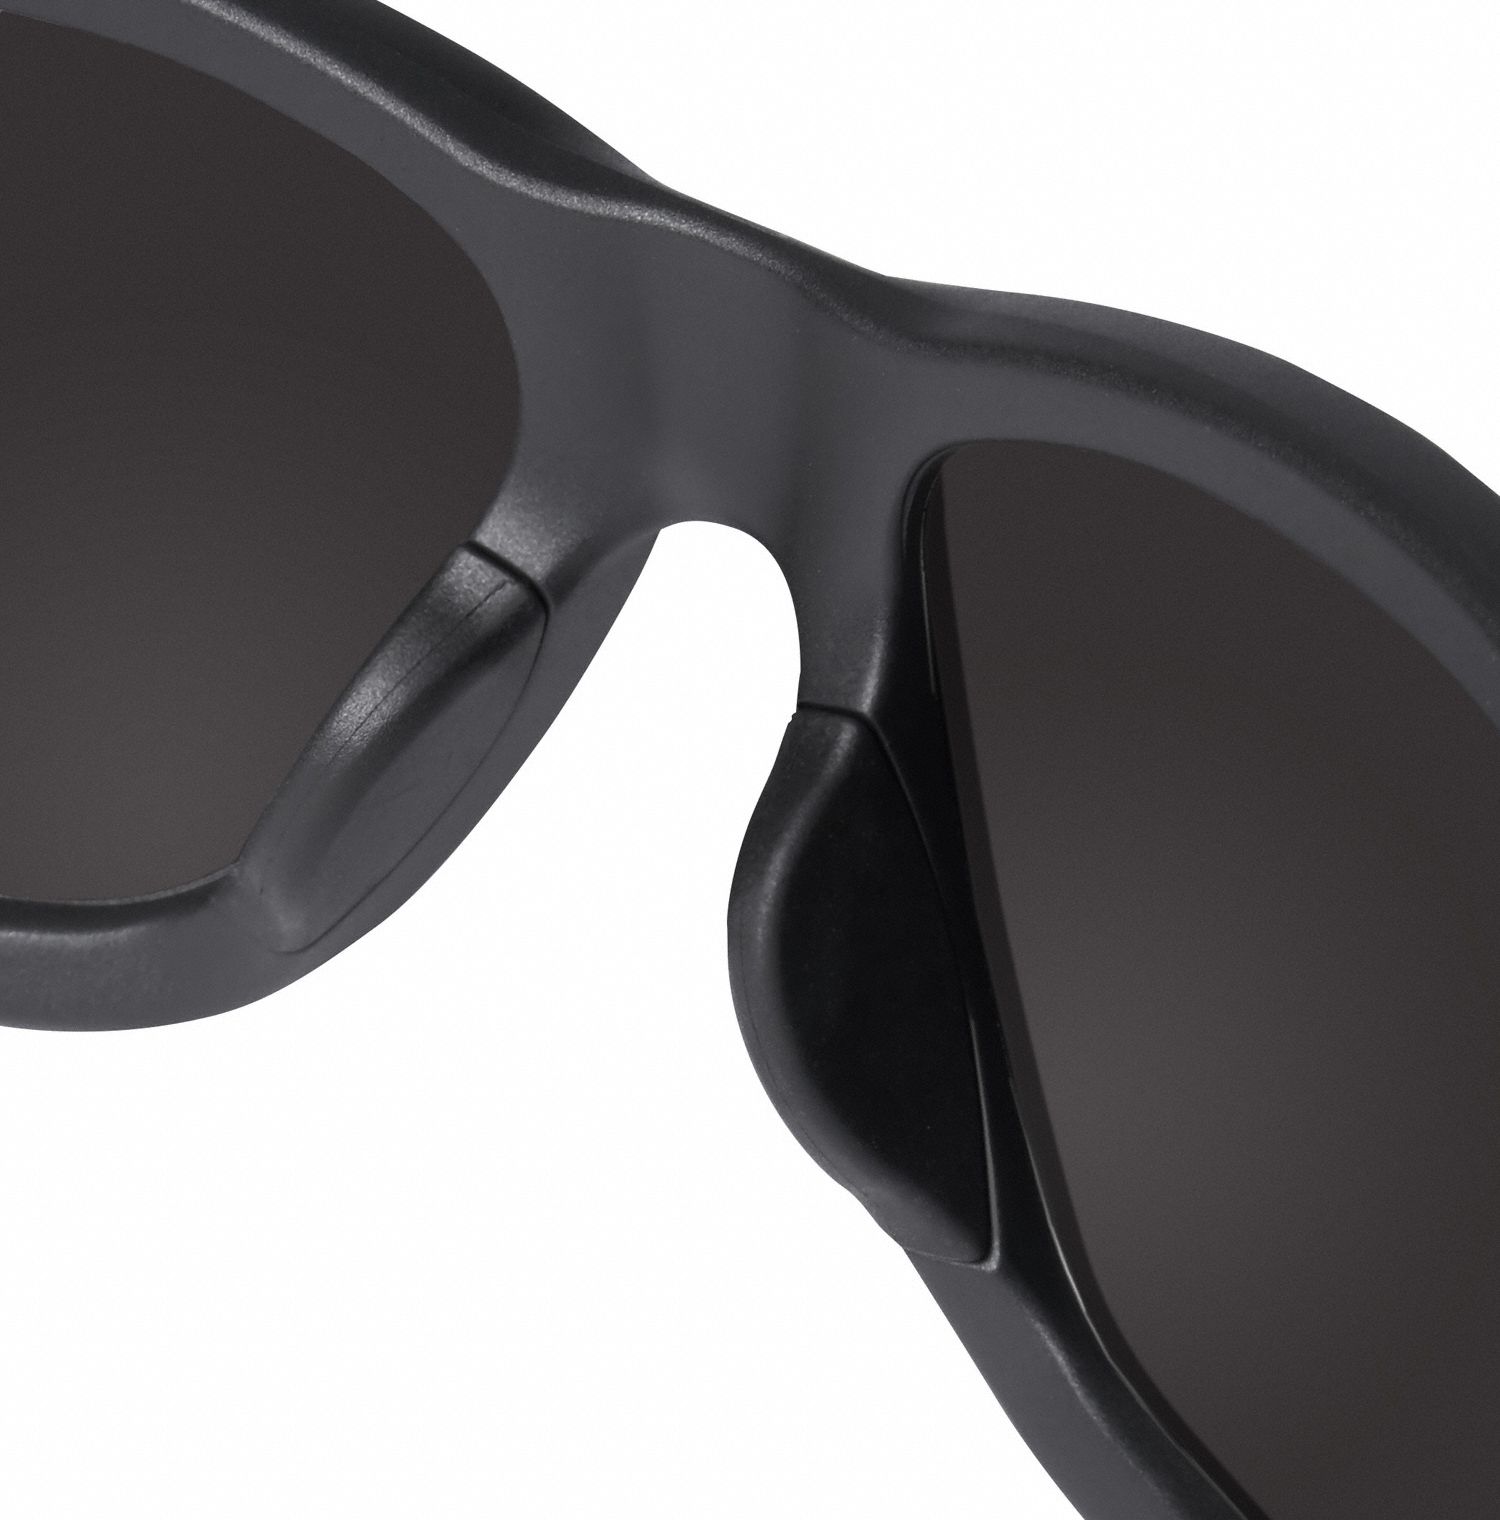 MILWAUKEE Safety Glasses, Black Frame, Smoke Lens - 55FE97|48-73-2025 ...